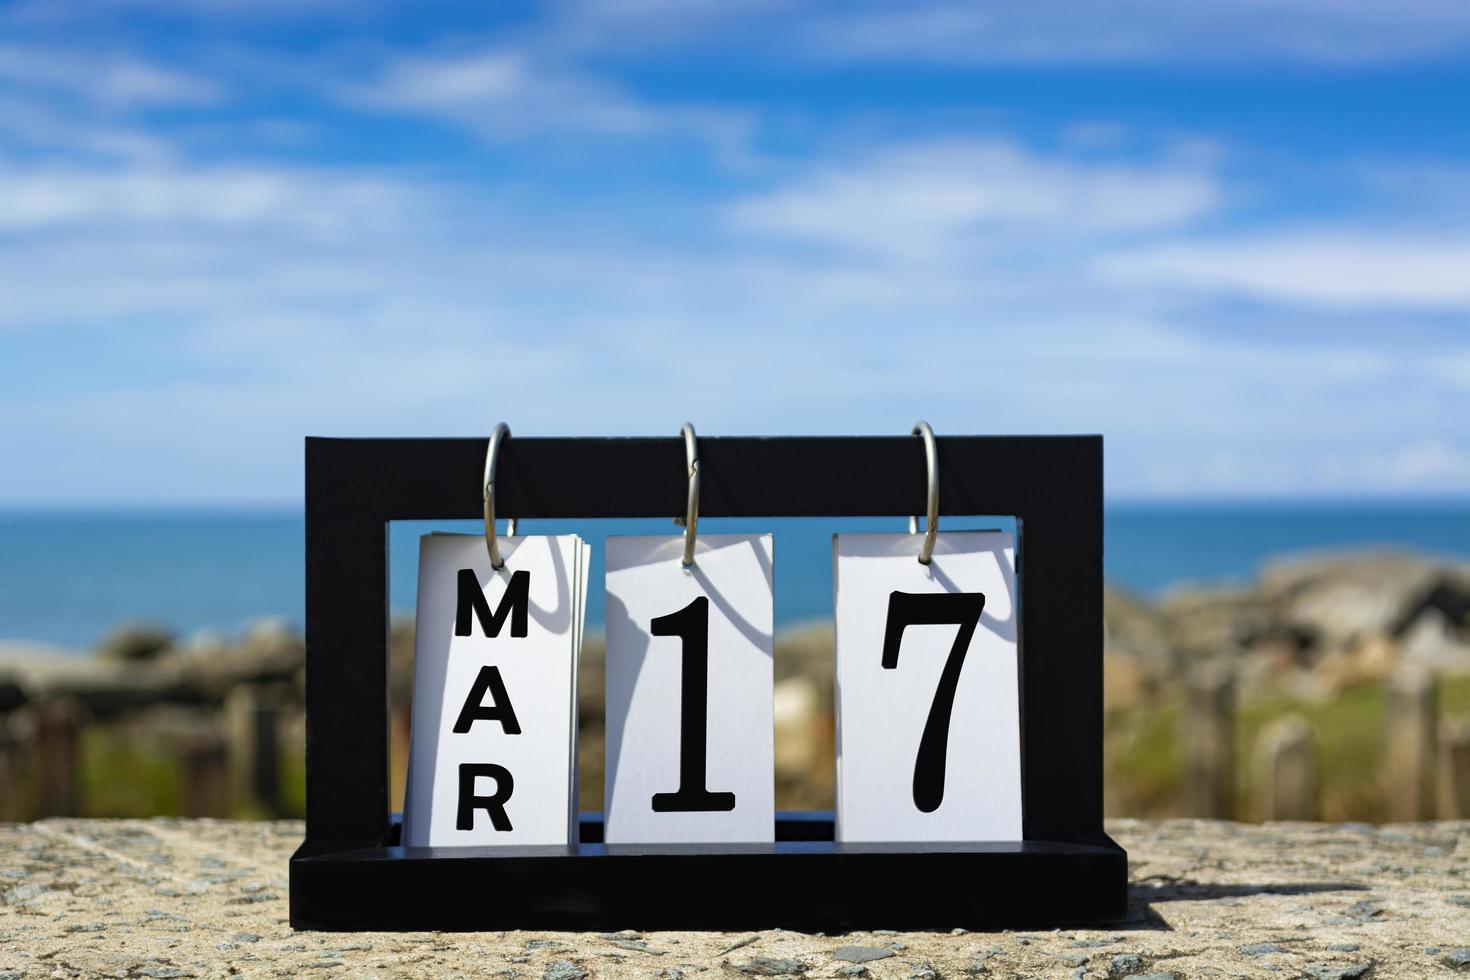 17 mars kalenderdatum text på träram med suddig bakgrund av havet. foto